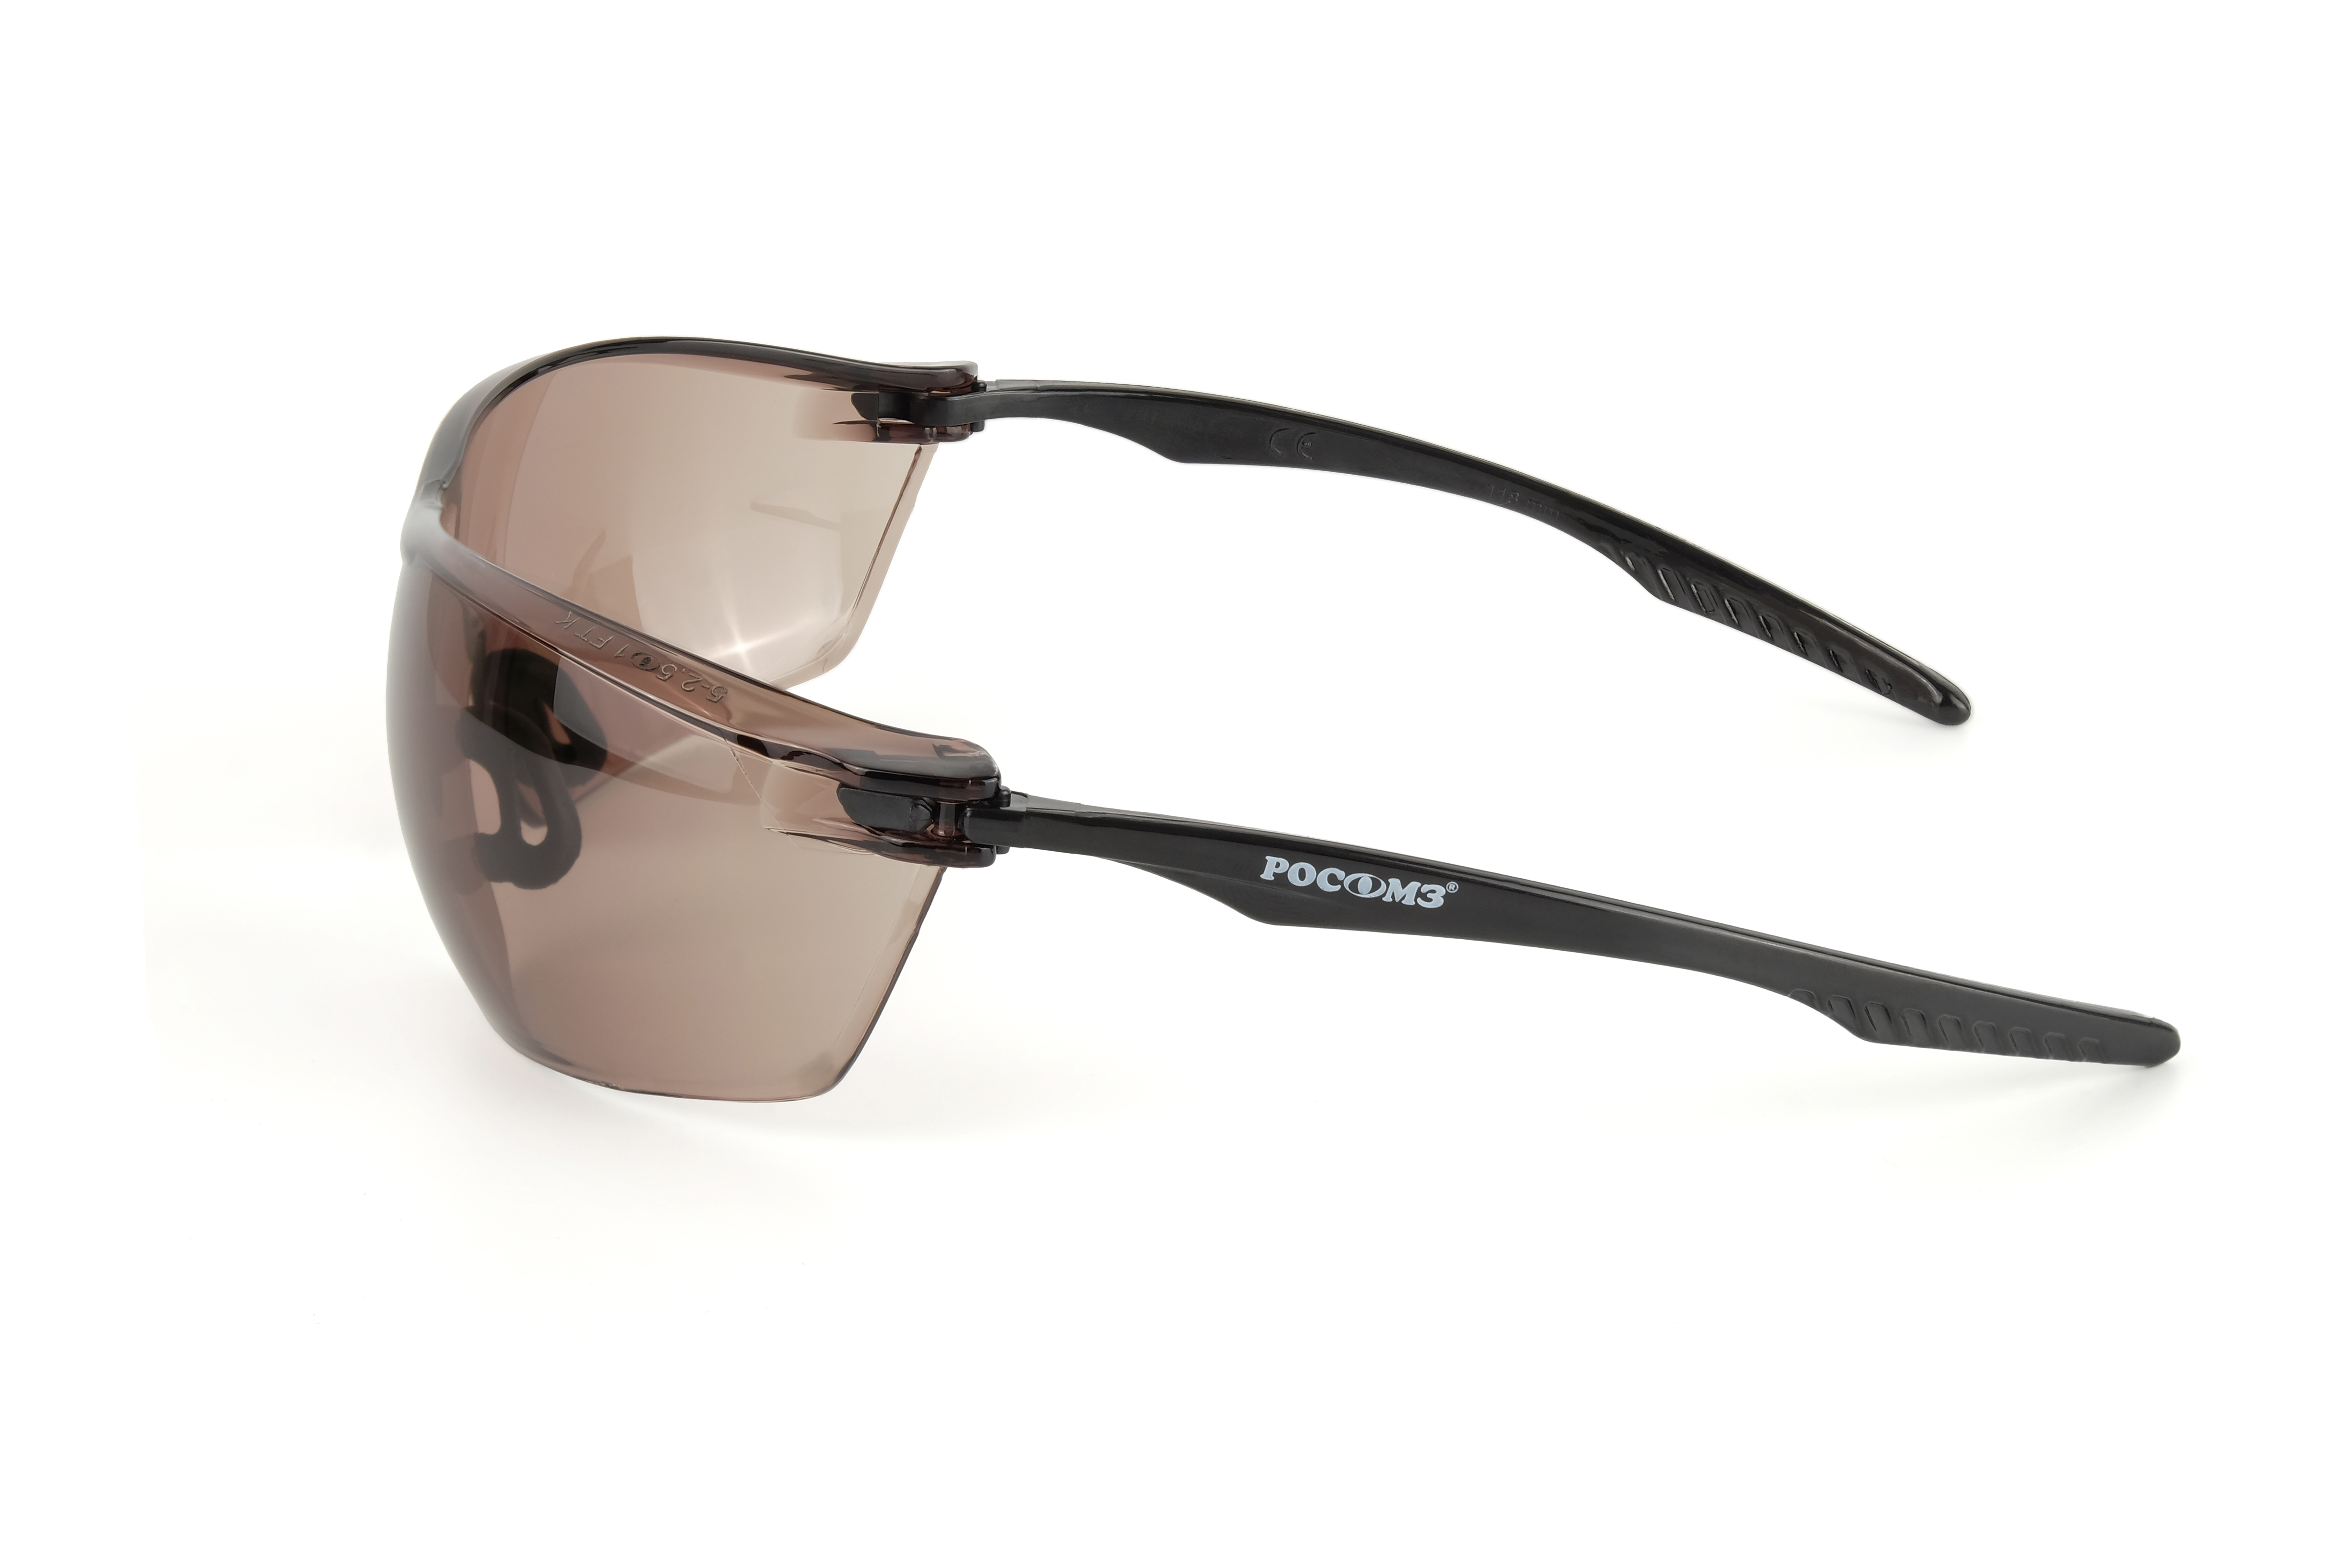 О88 SURGUT CRYSTALINE® (5-2,5 РС) очки защитные открытые с мягким носоупором